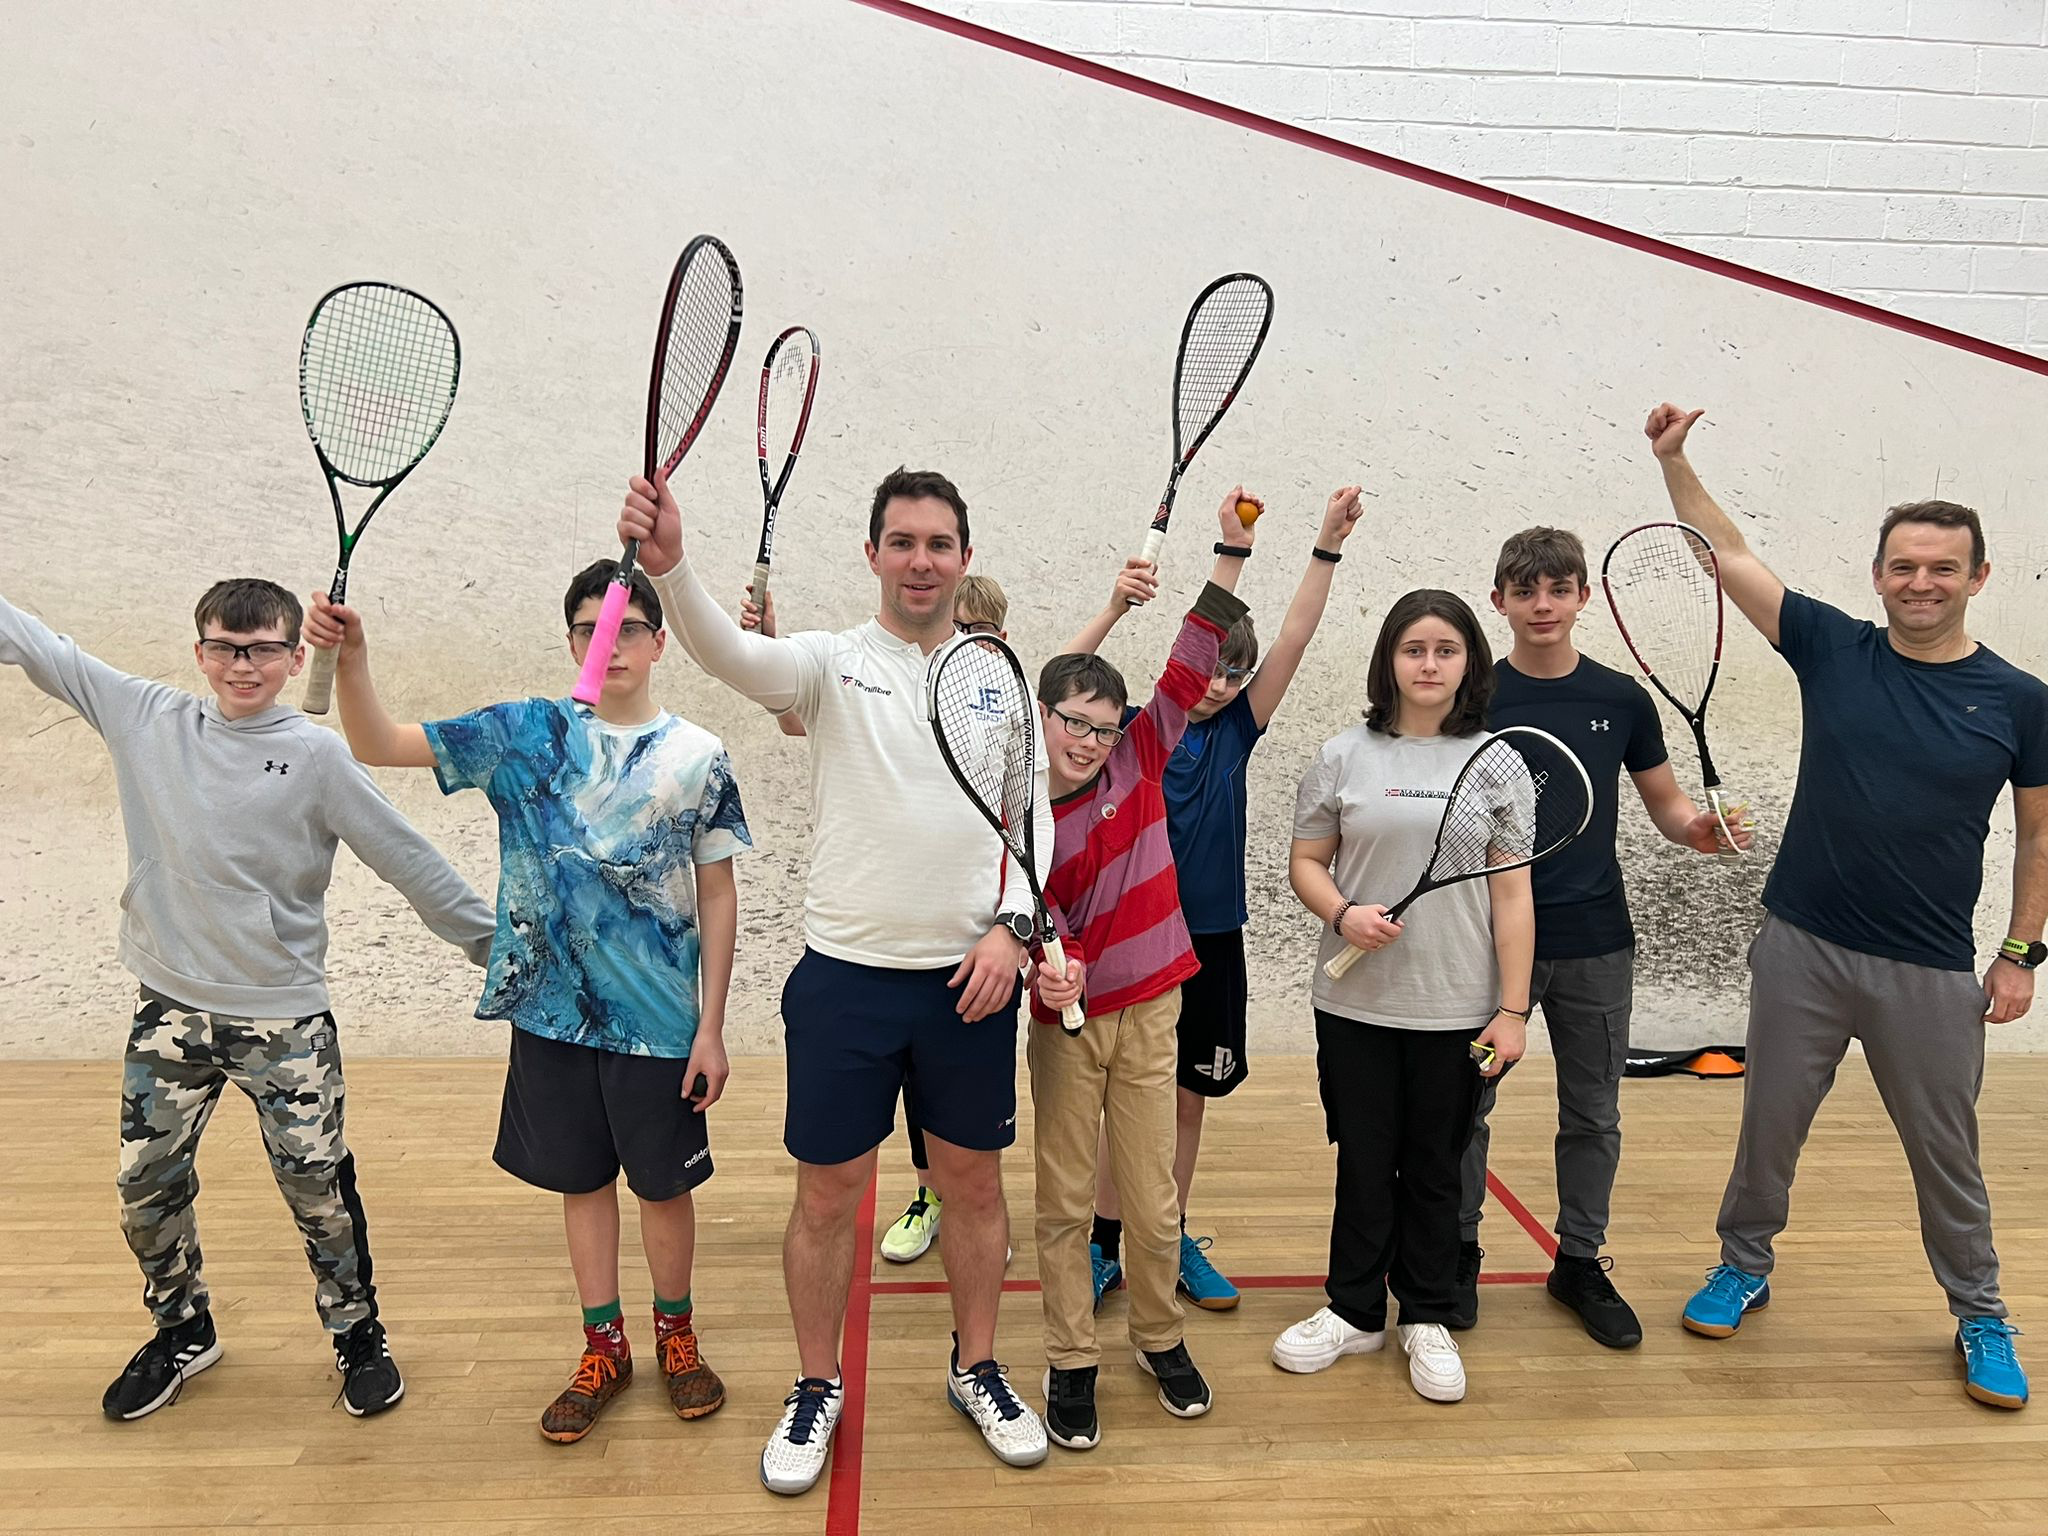 Grampain Squash Club Members celebrate 